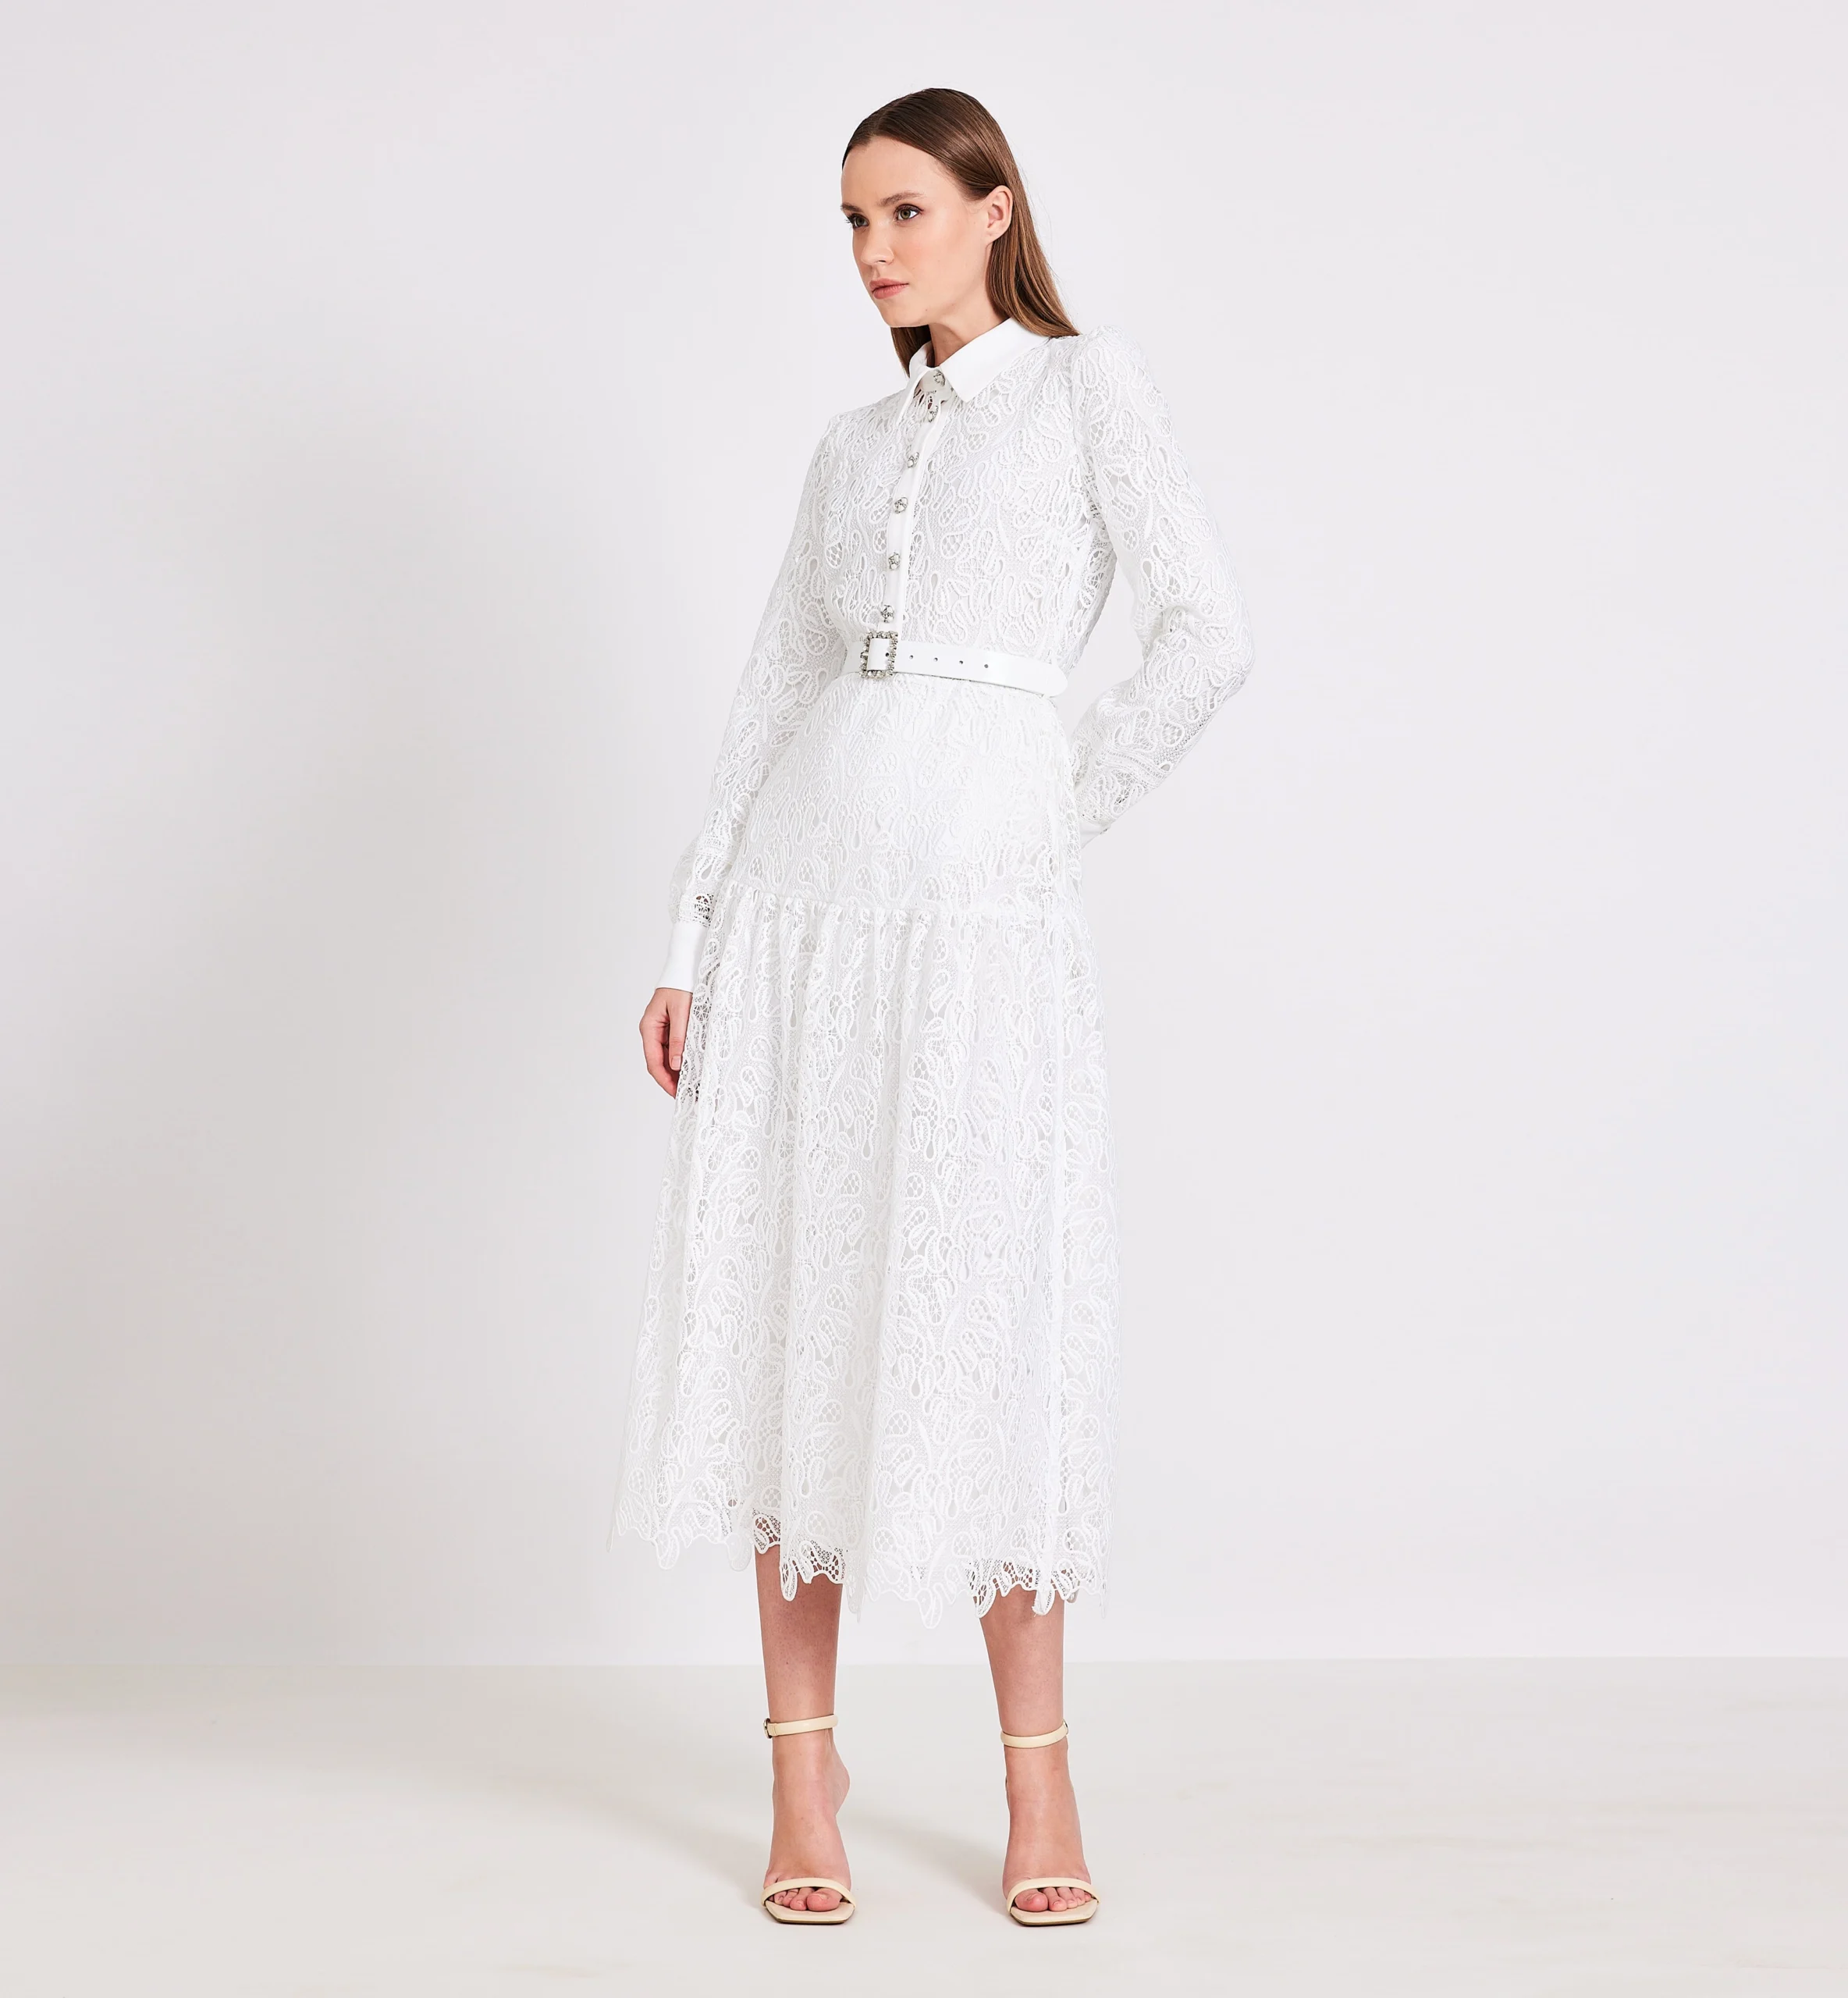 Buttoned lace midi dress, white